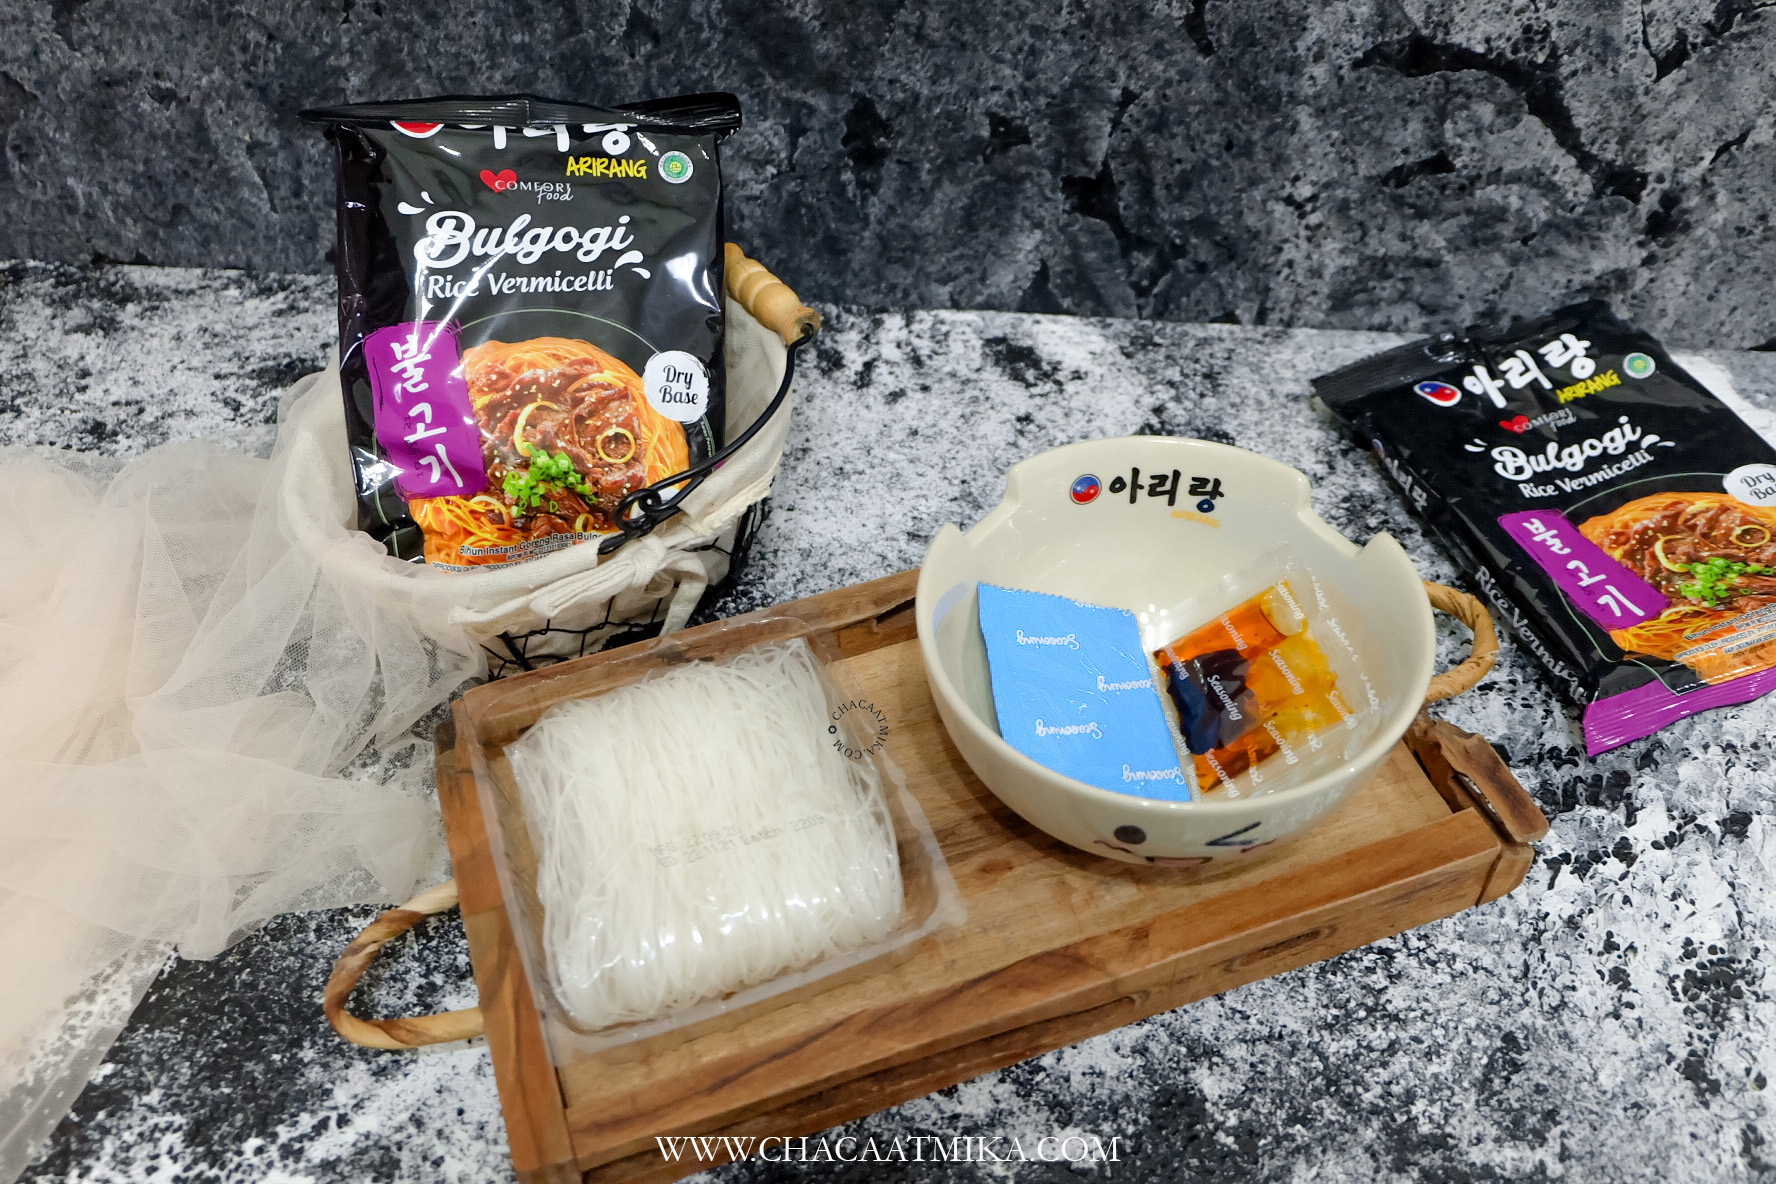 Review Arirang Bulgogi Rice Vermicelli